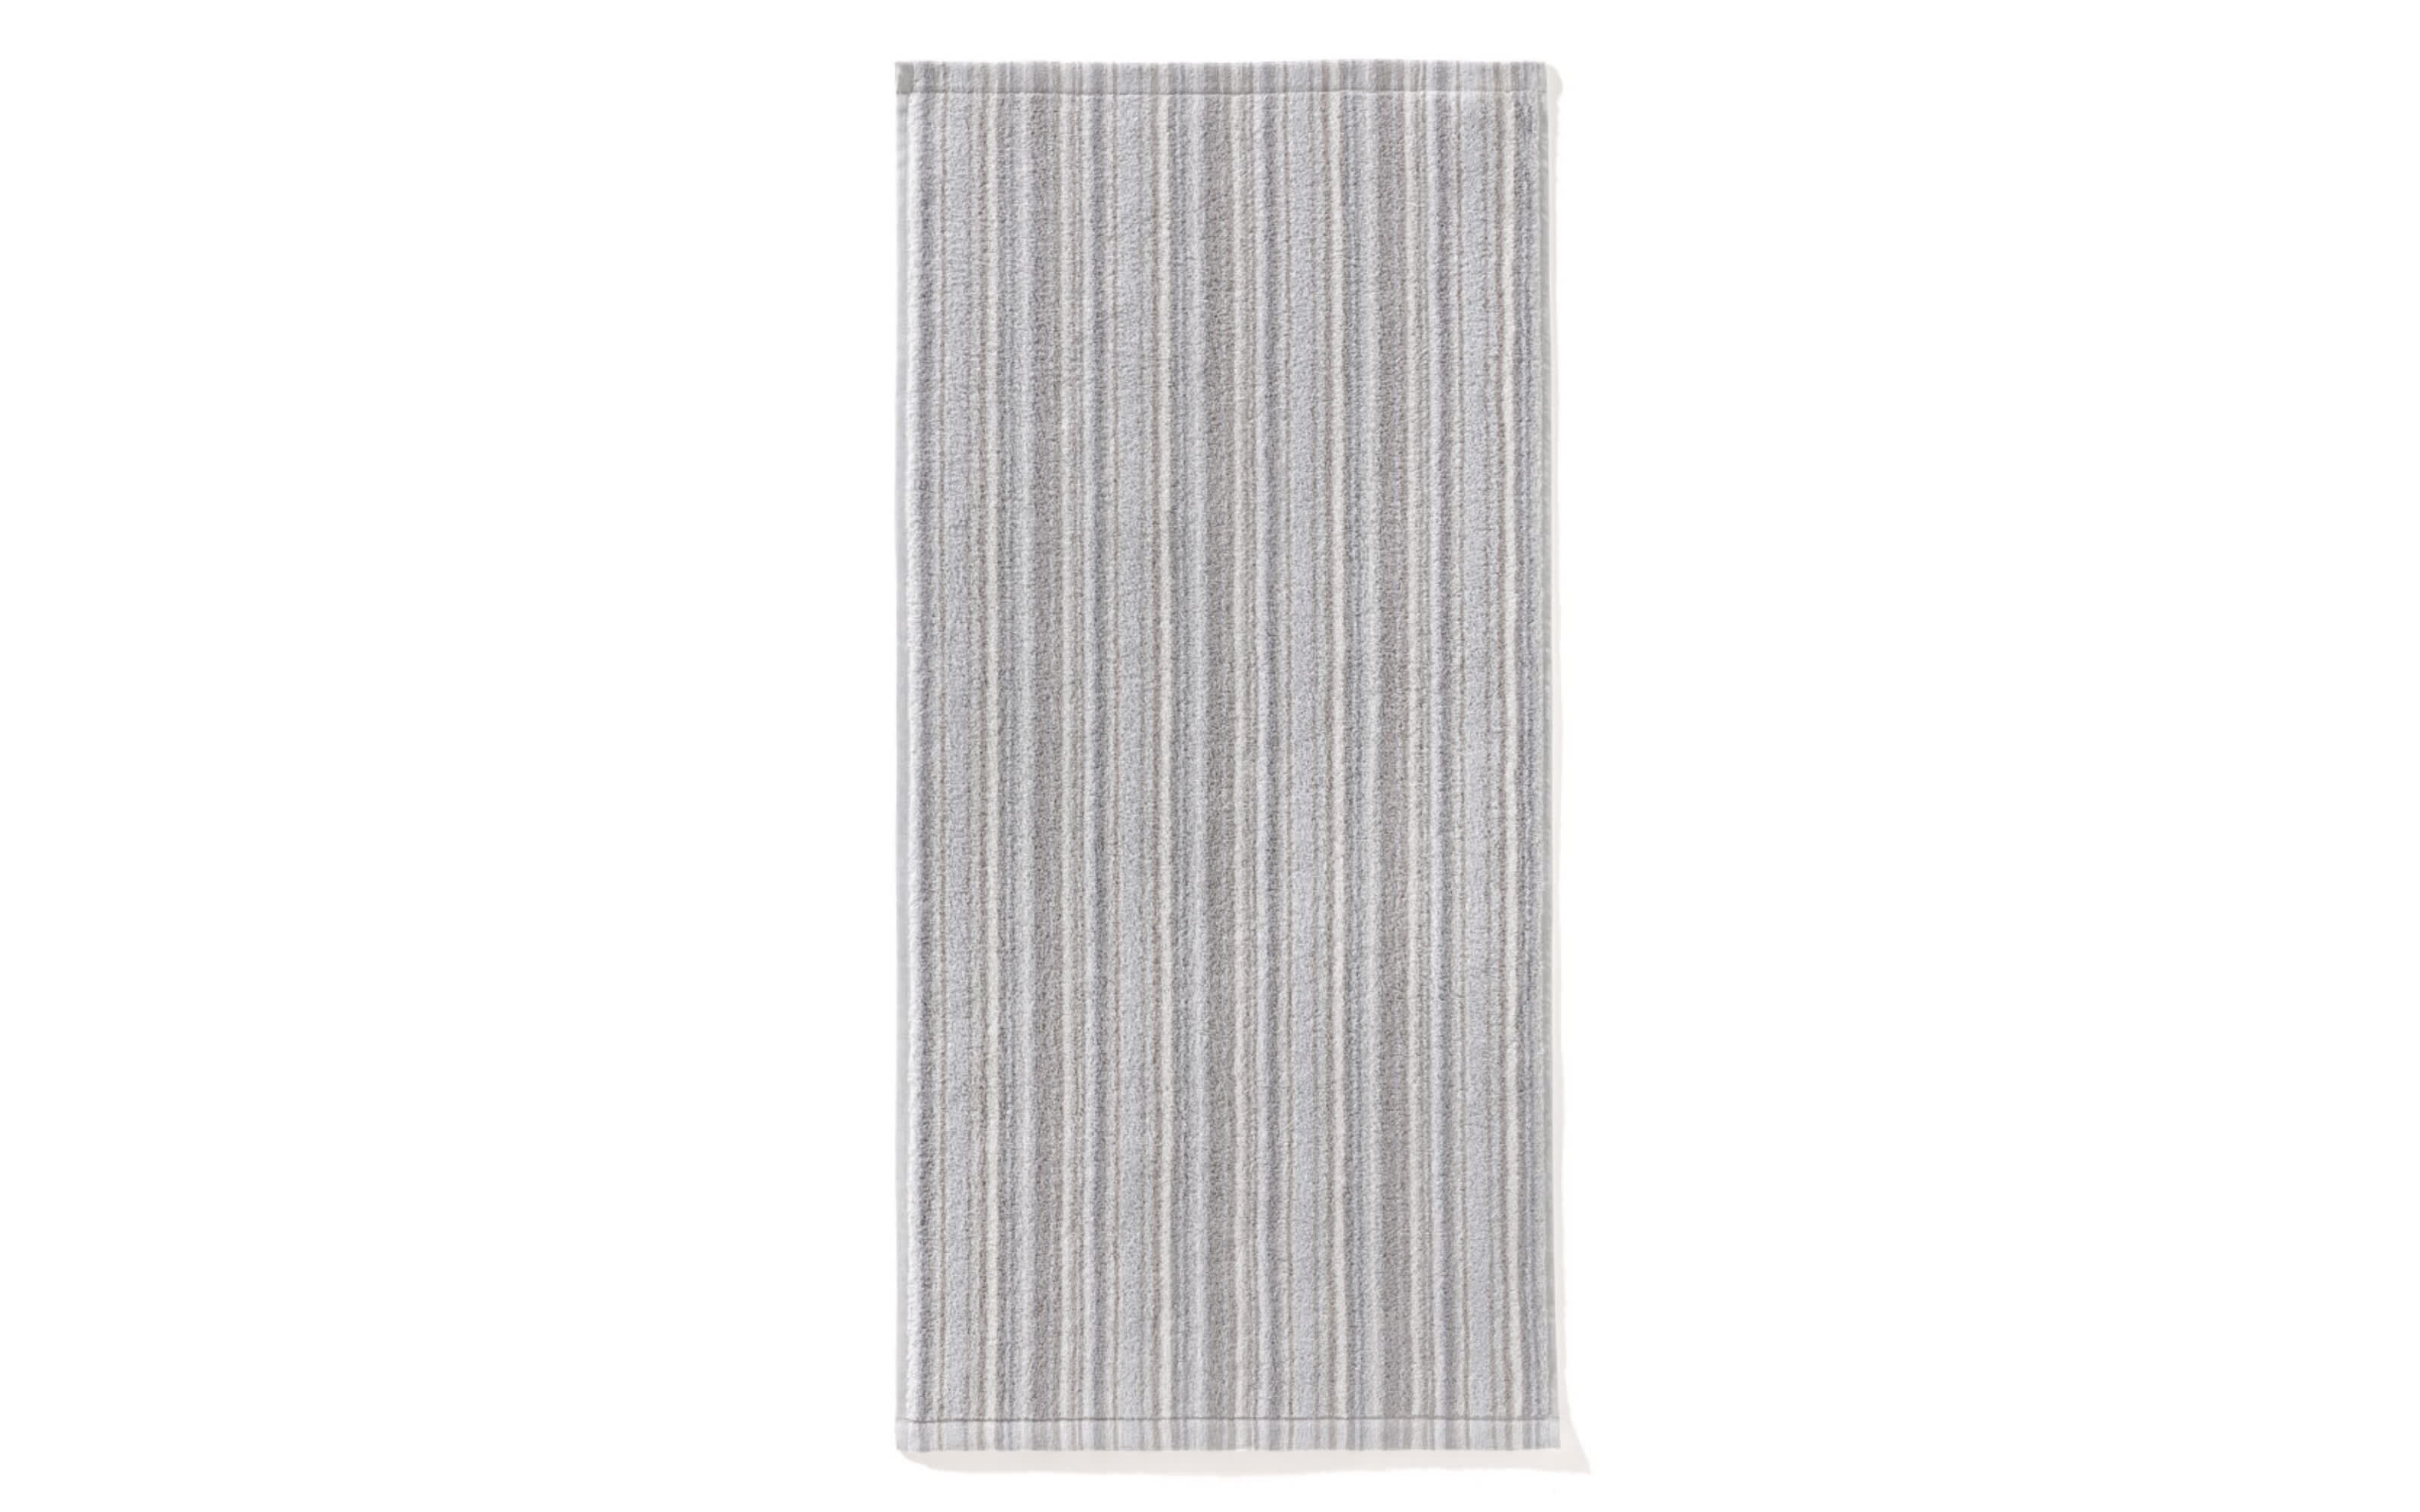 Handtuch, grau/anthrazit gestreift, 50 cm x 100 cm